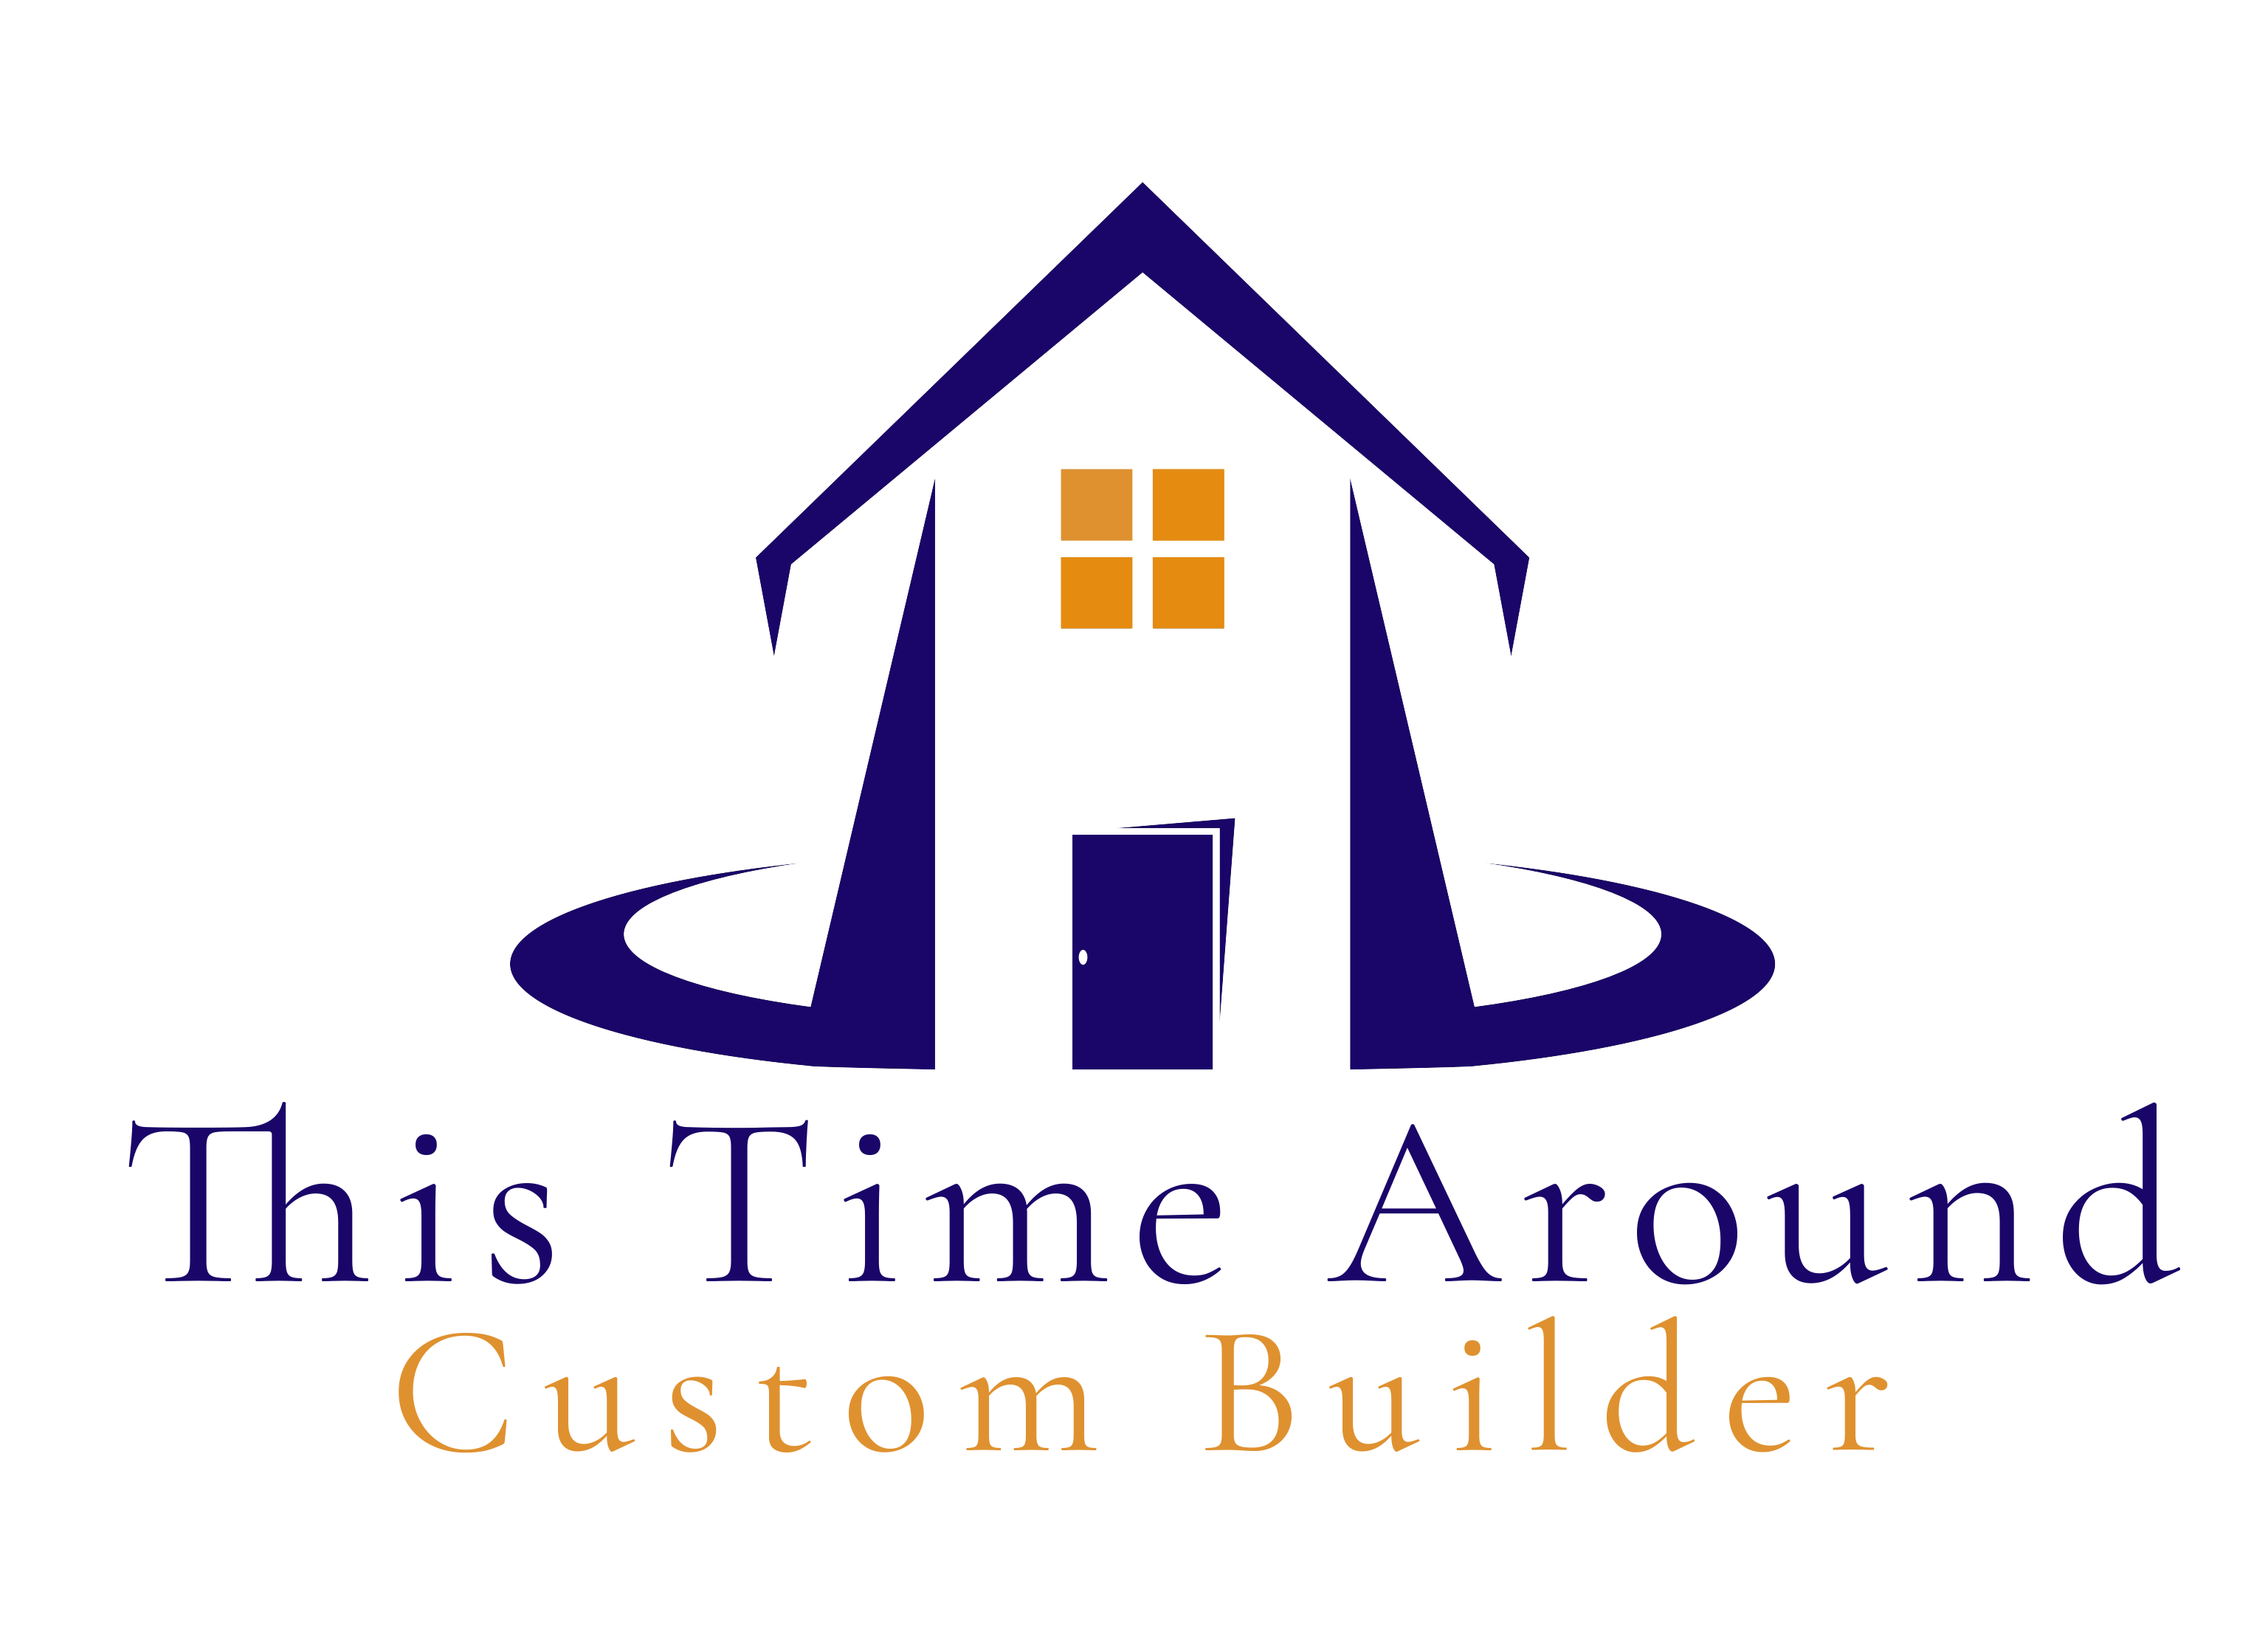 This Time Around, LLC logo